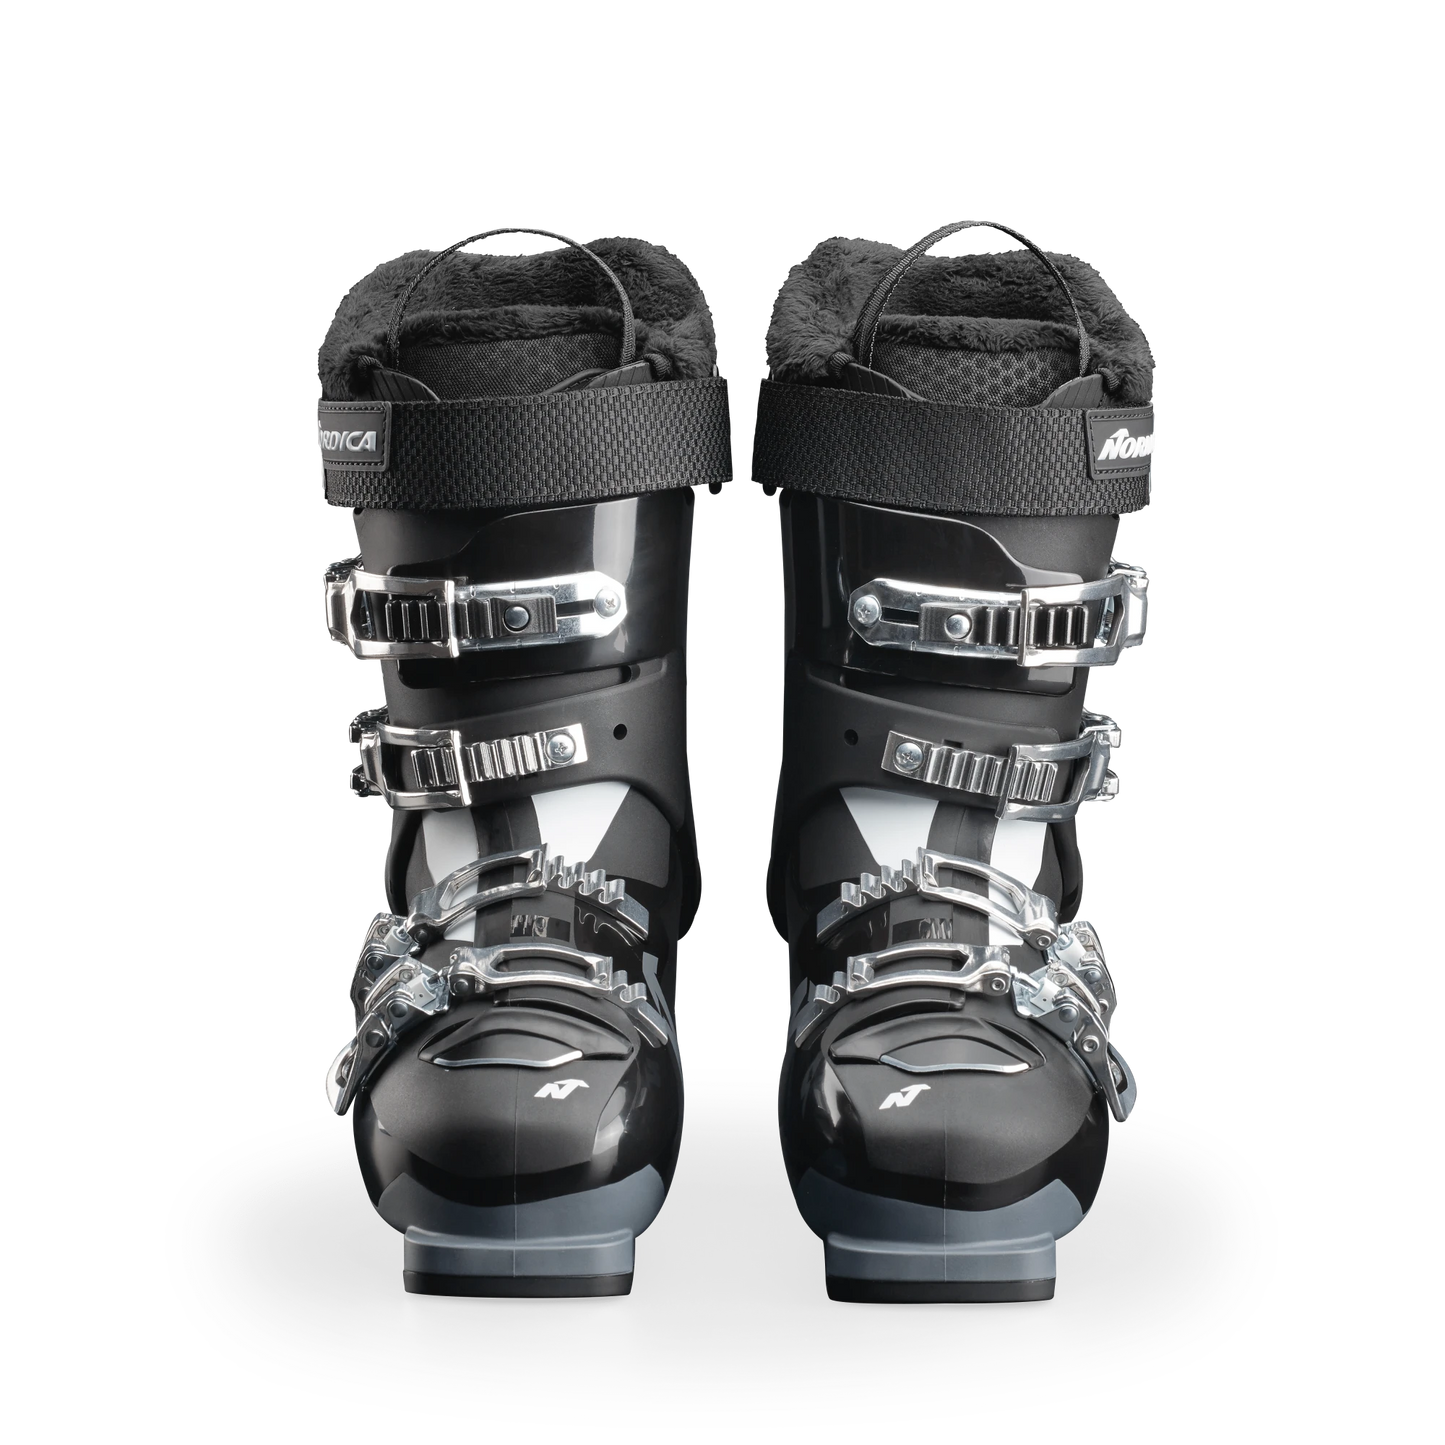 Nordica Sportmachine 3 65 W Ski Boots 2024 - Women's